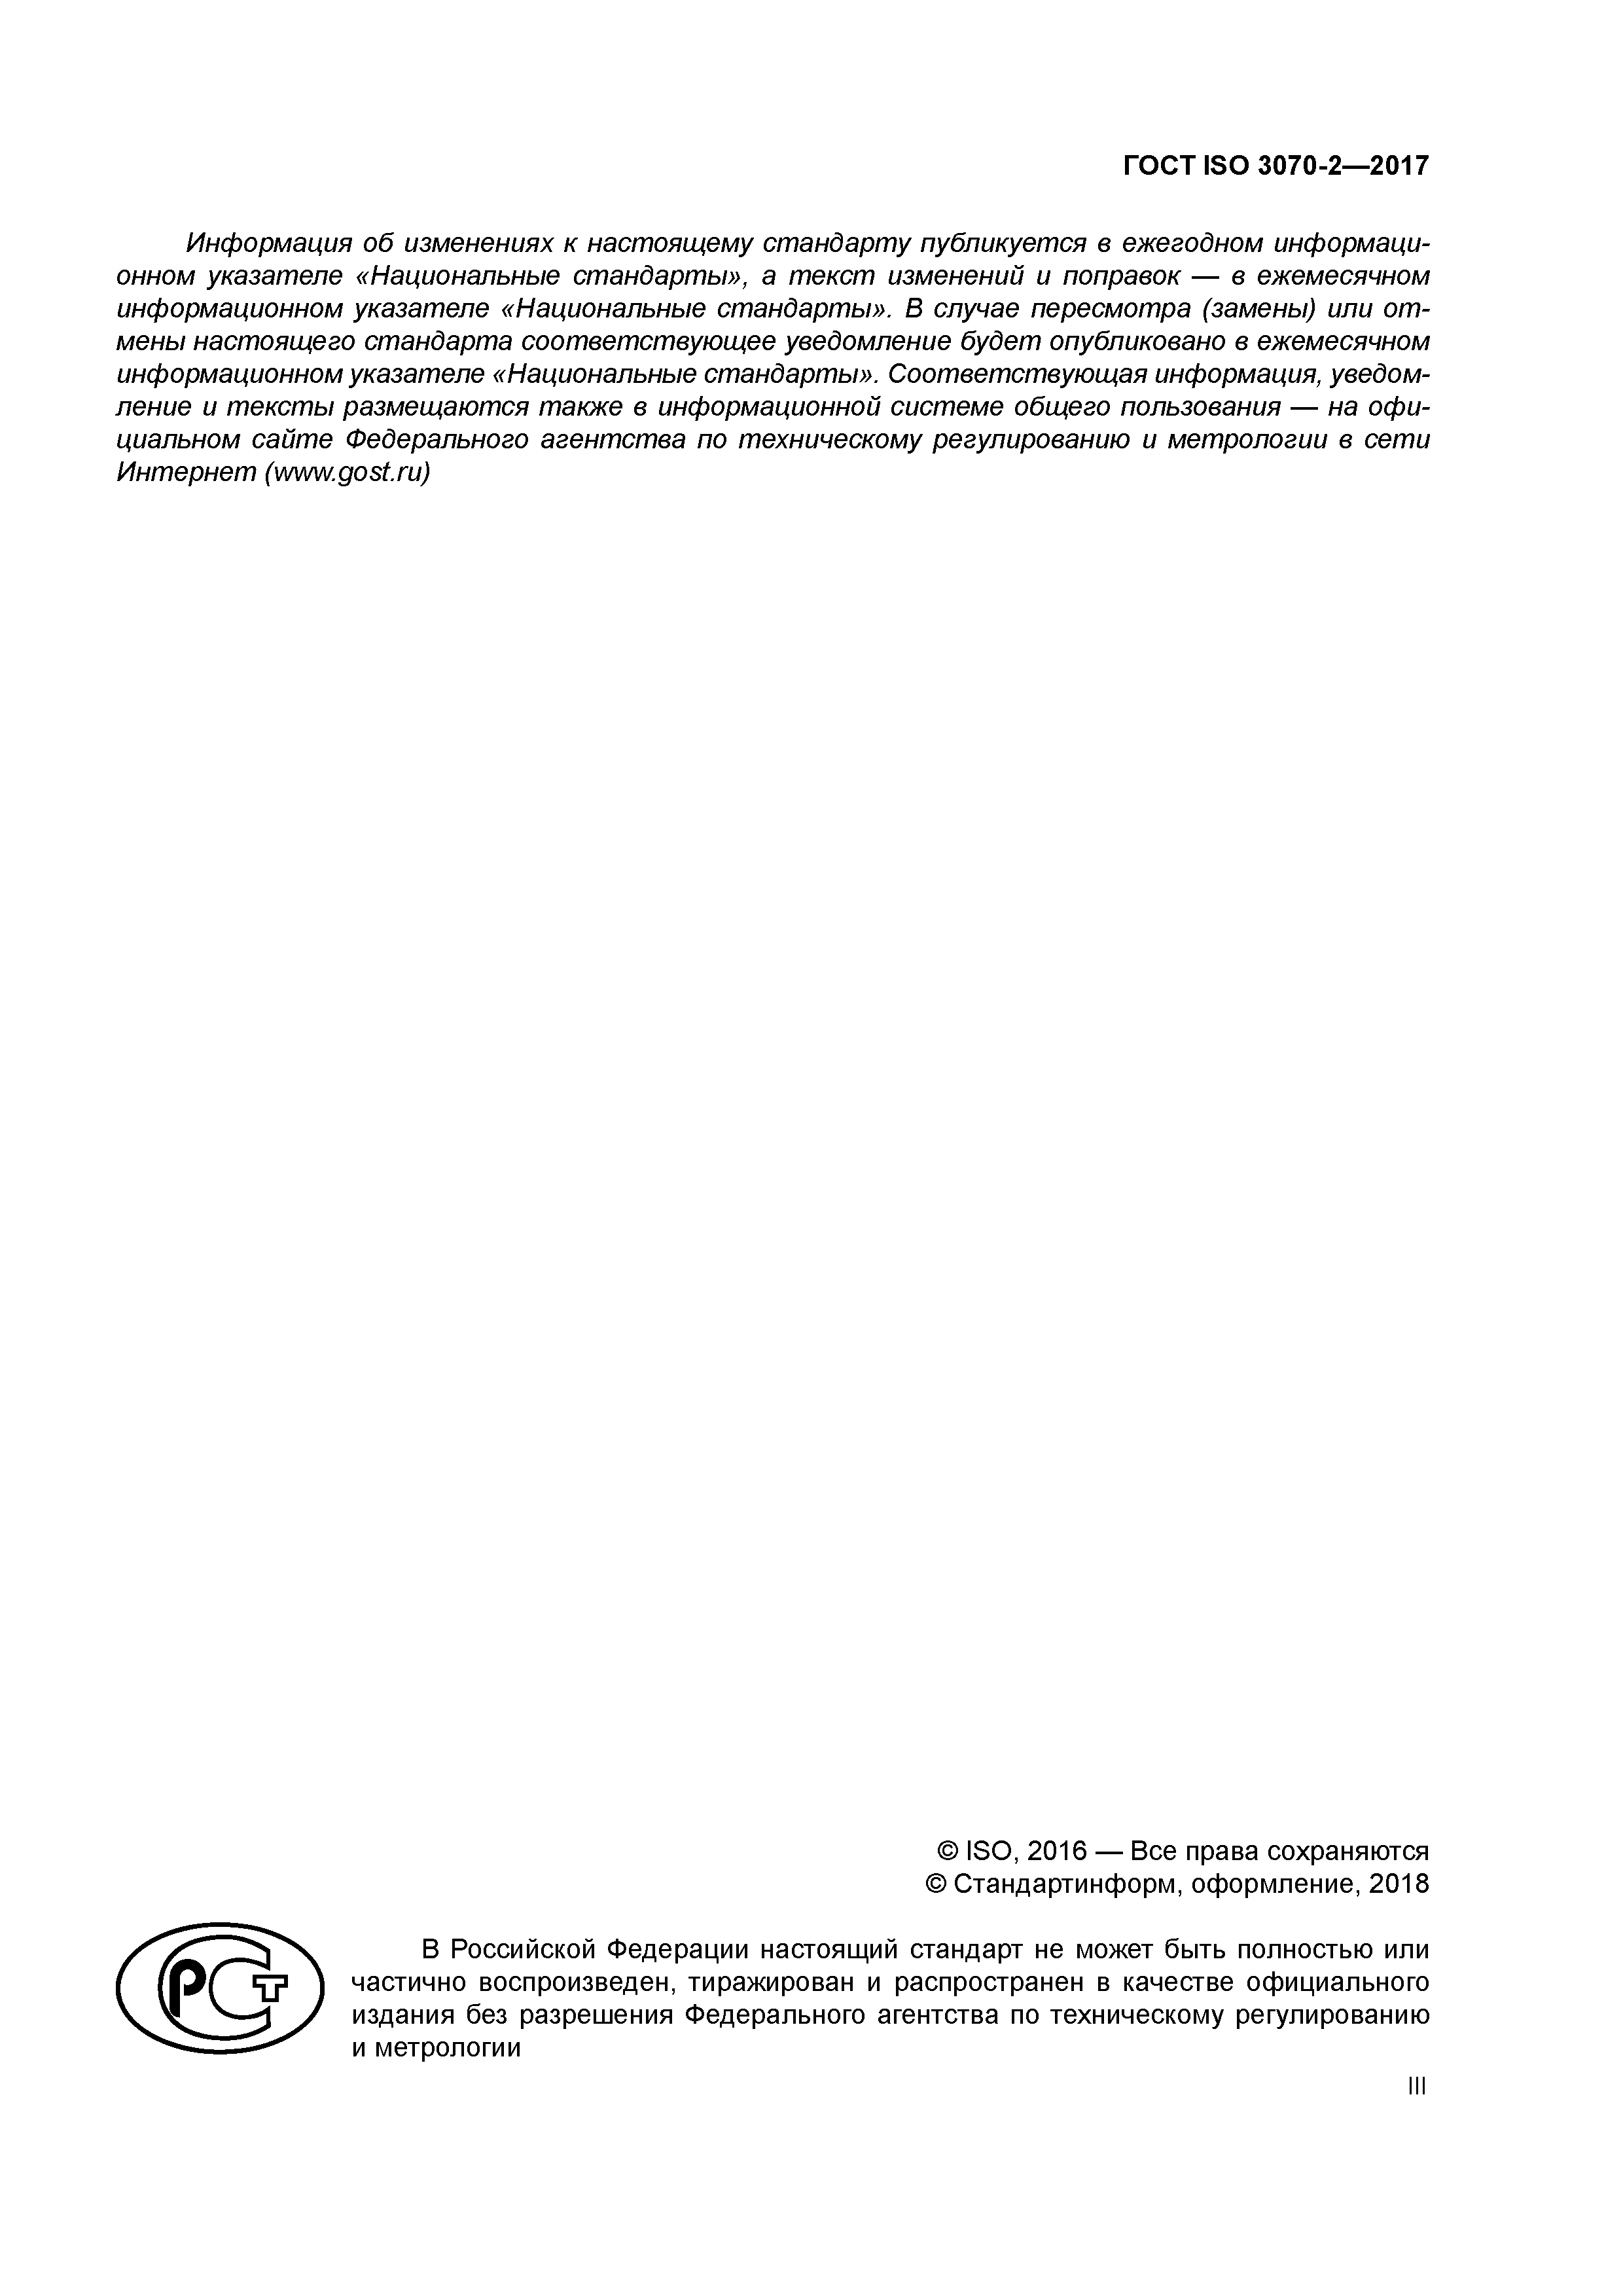 ГОСТ ISO 3070-2-2017